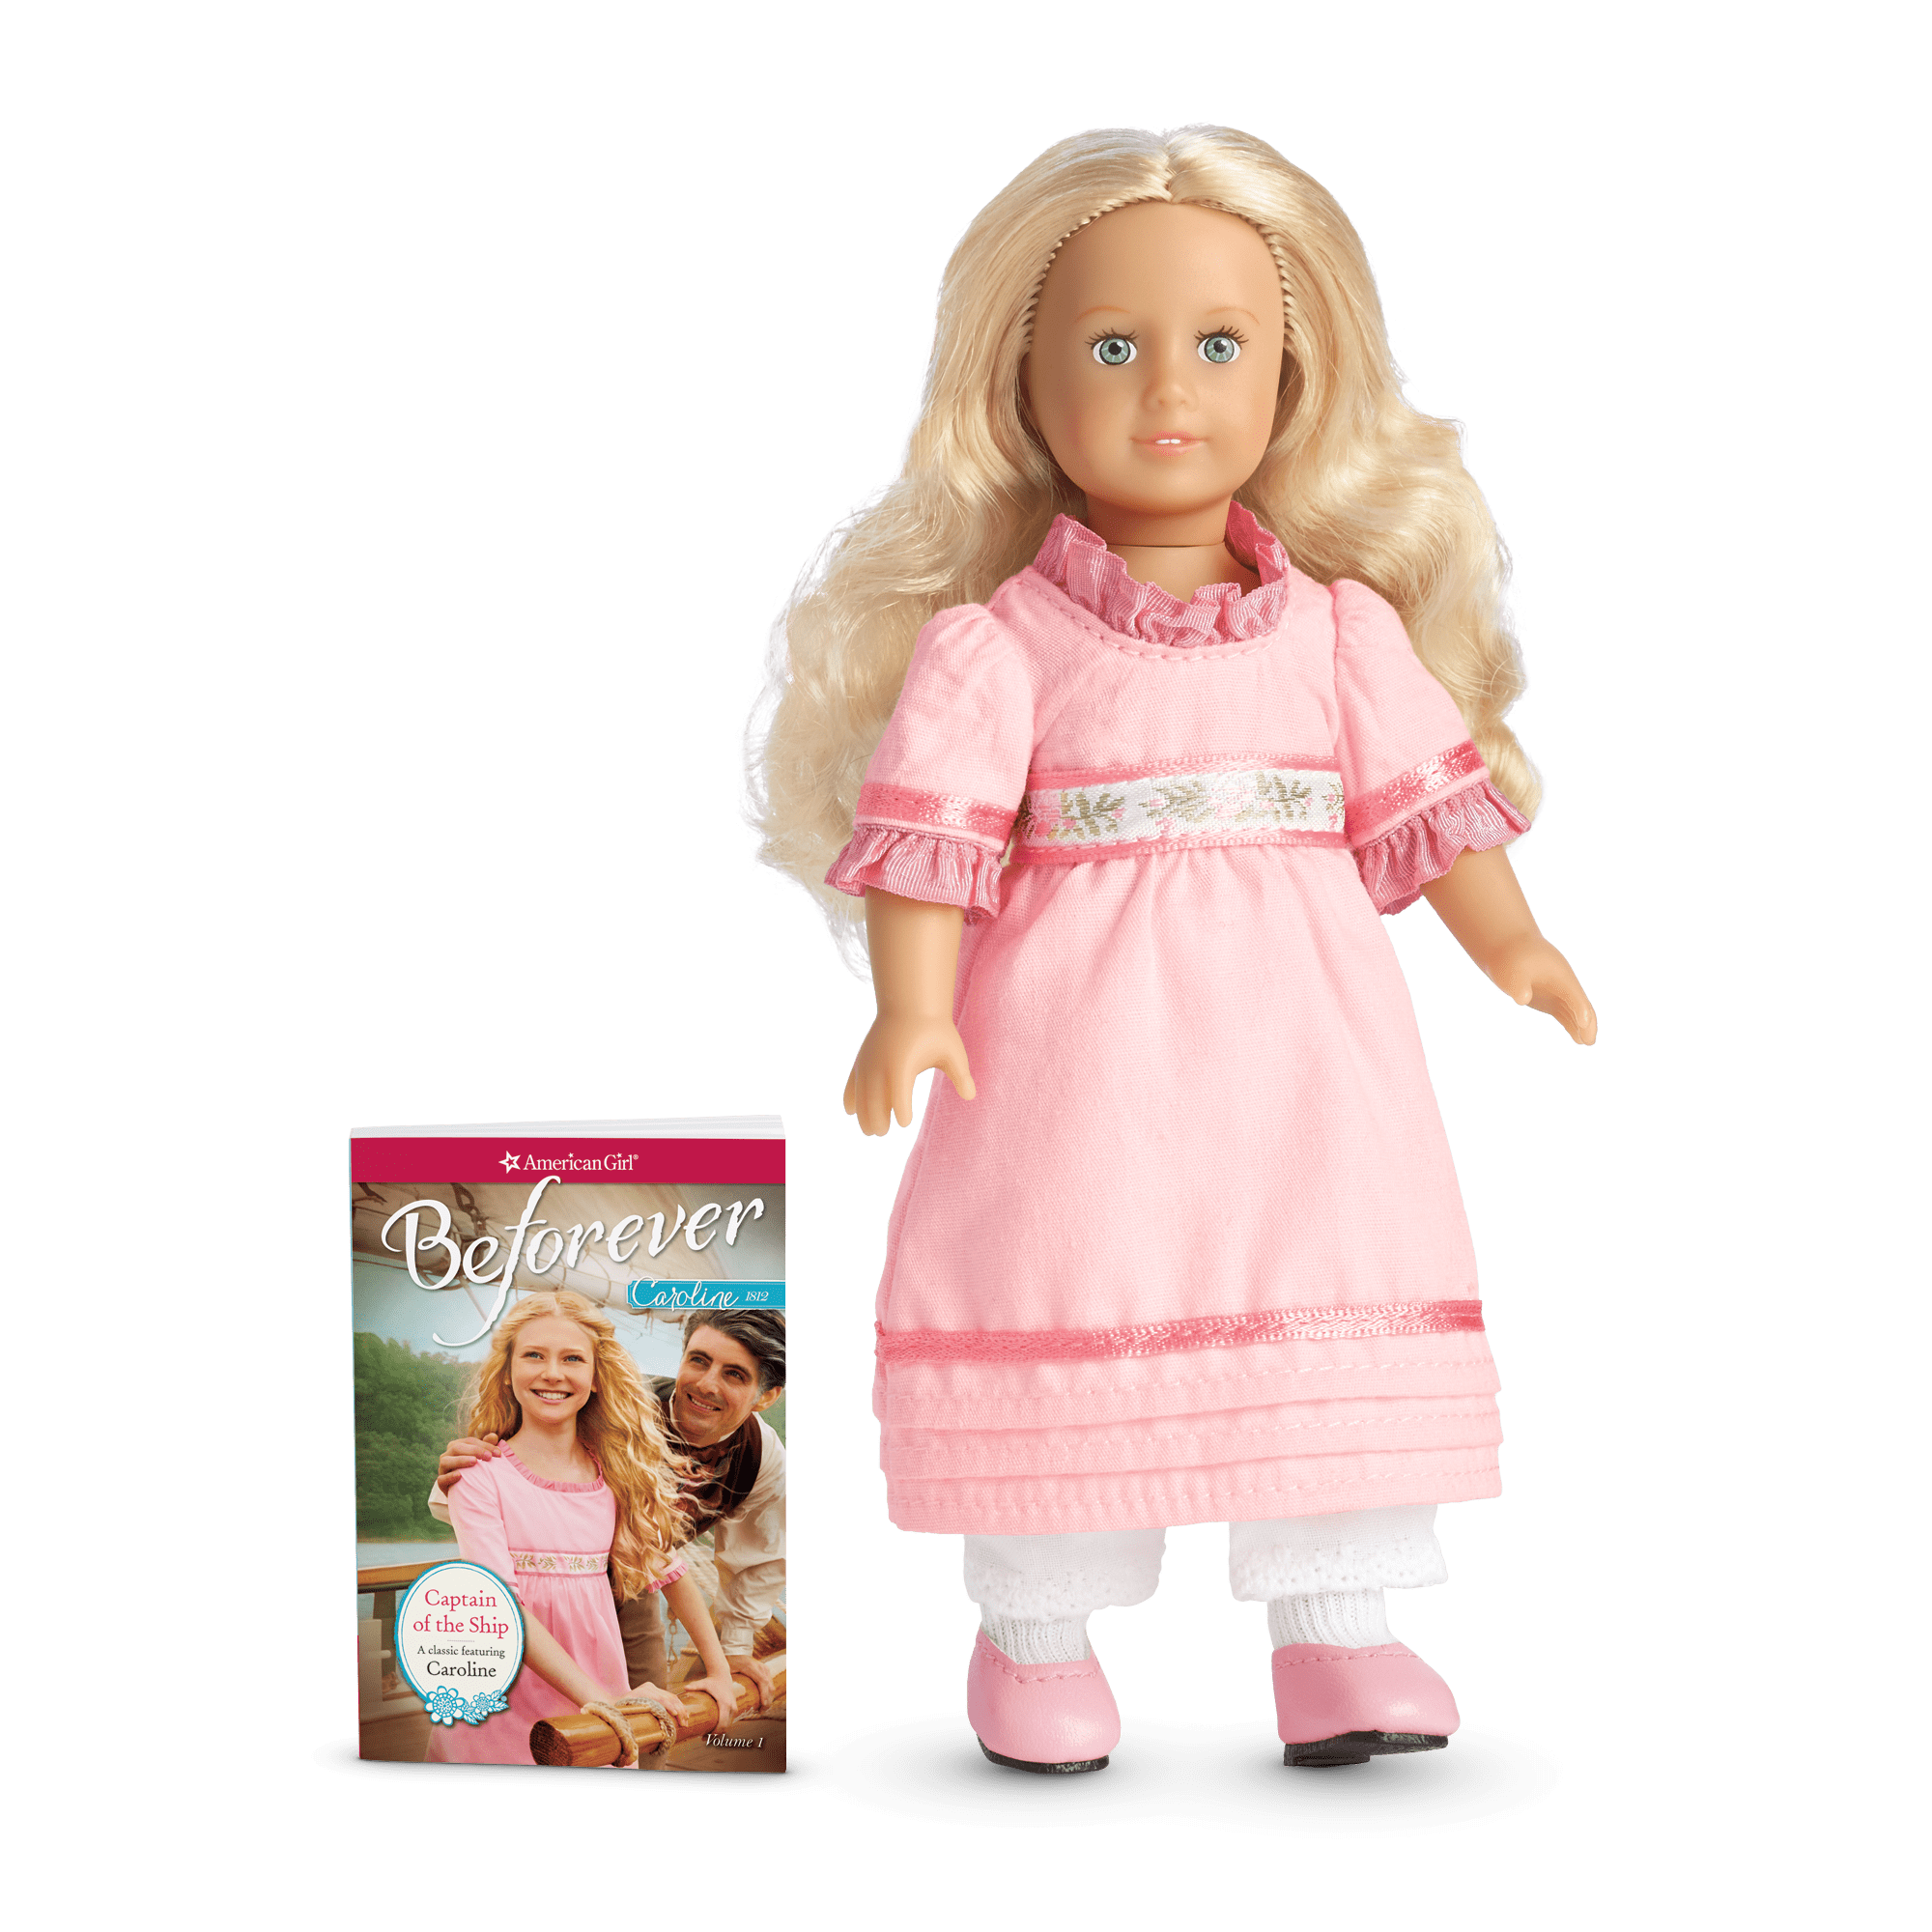 Caroline Abbott™ Mini Doll & Book